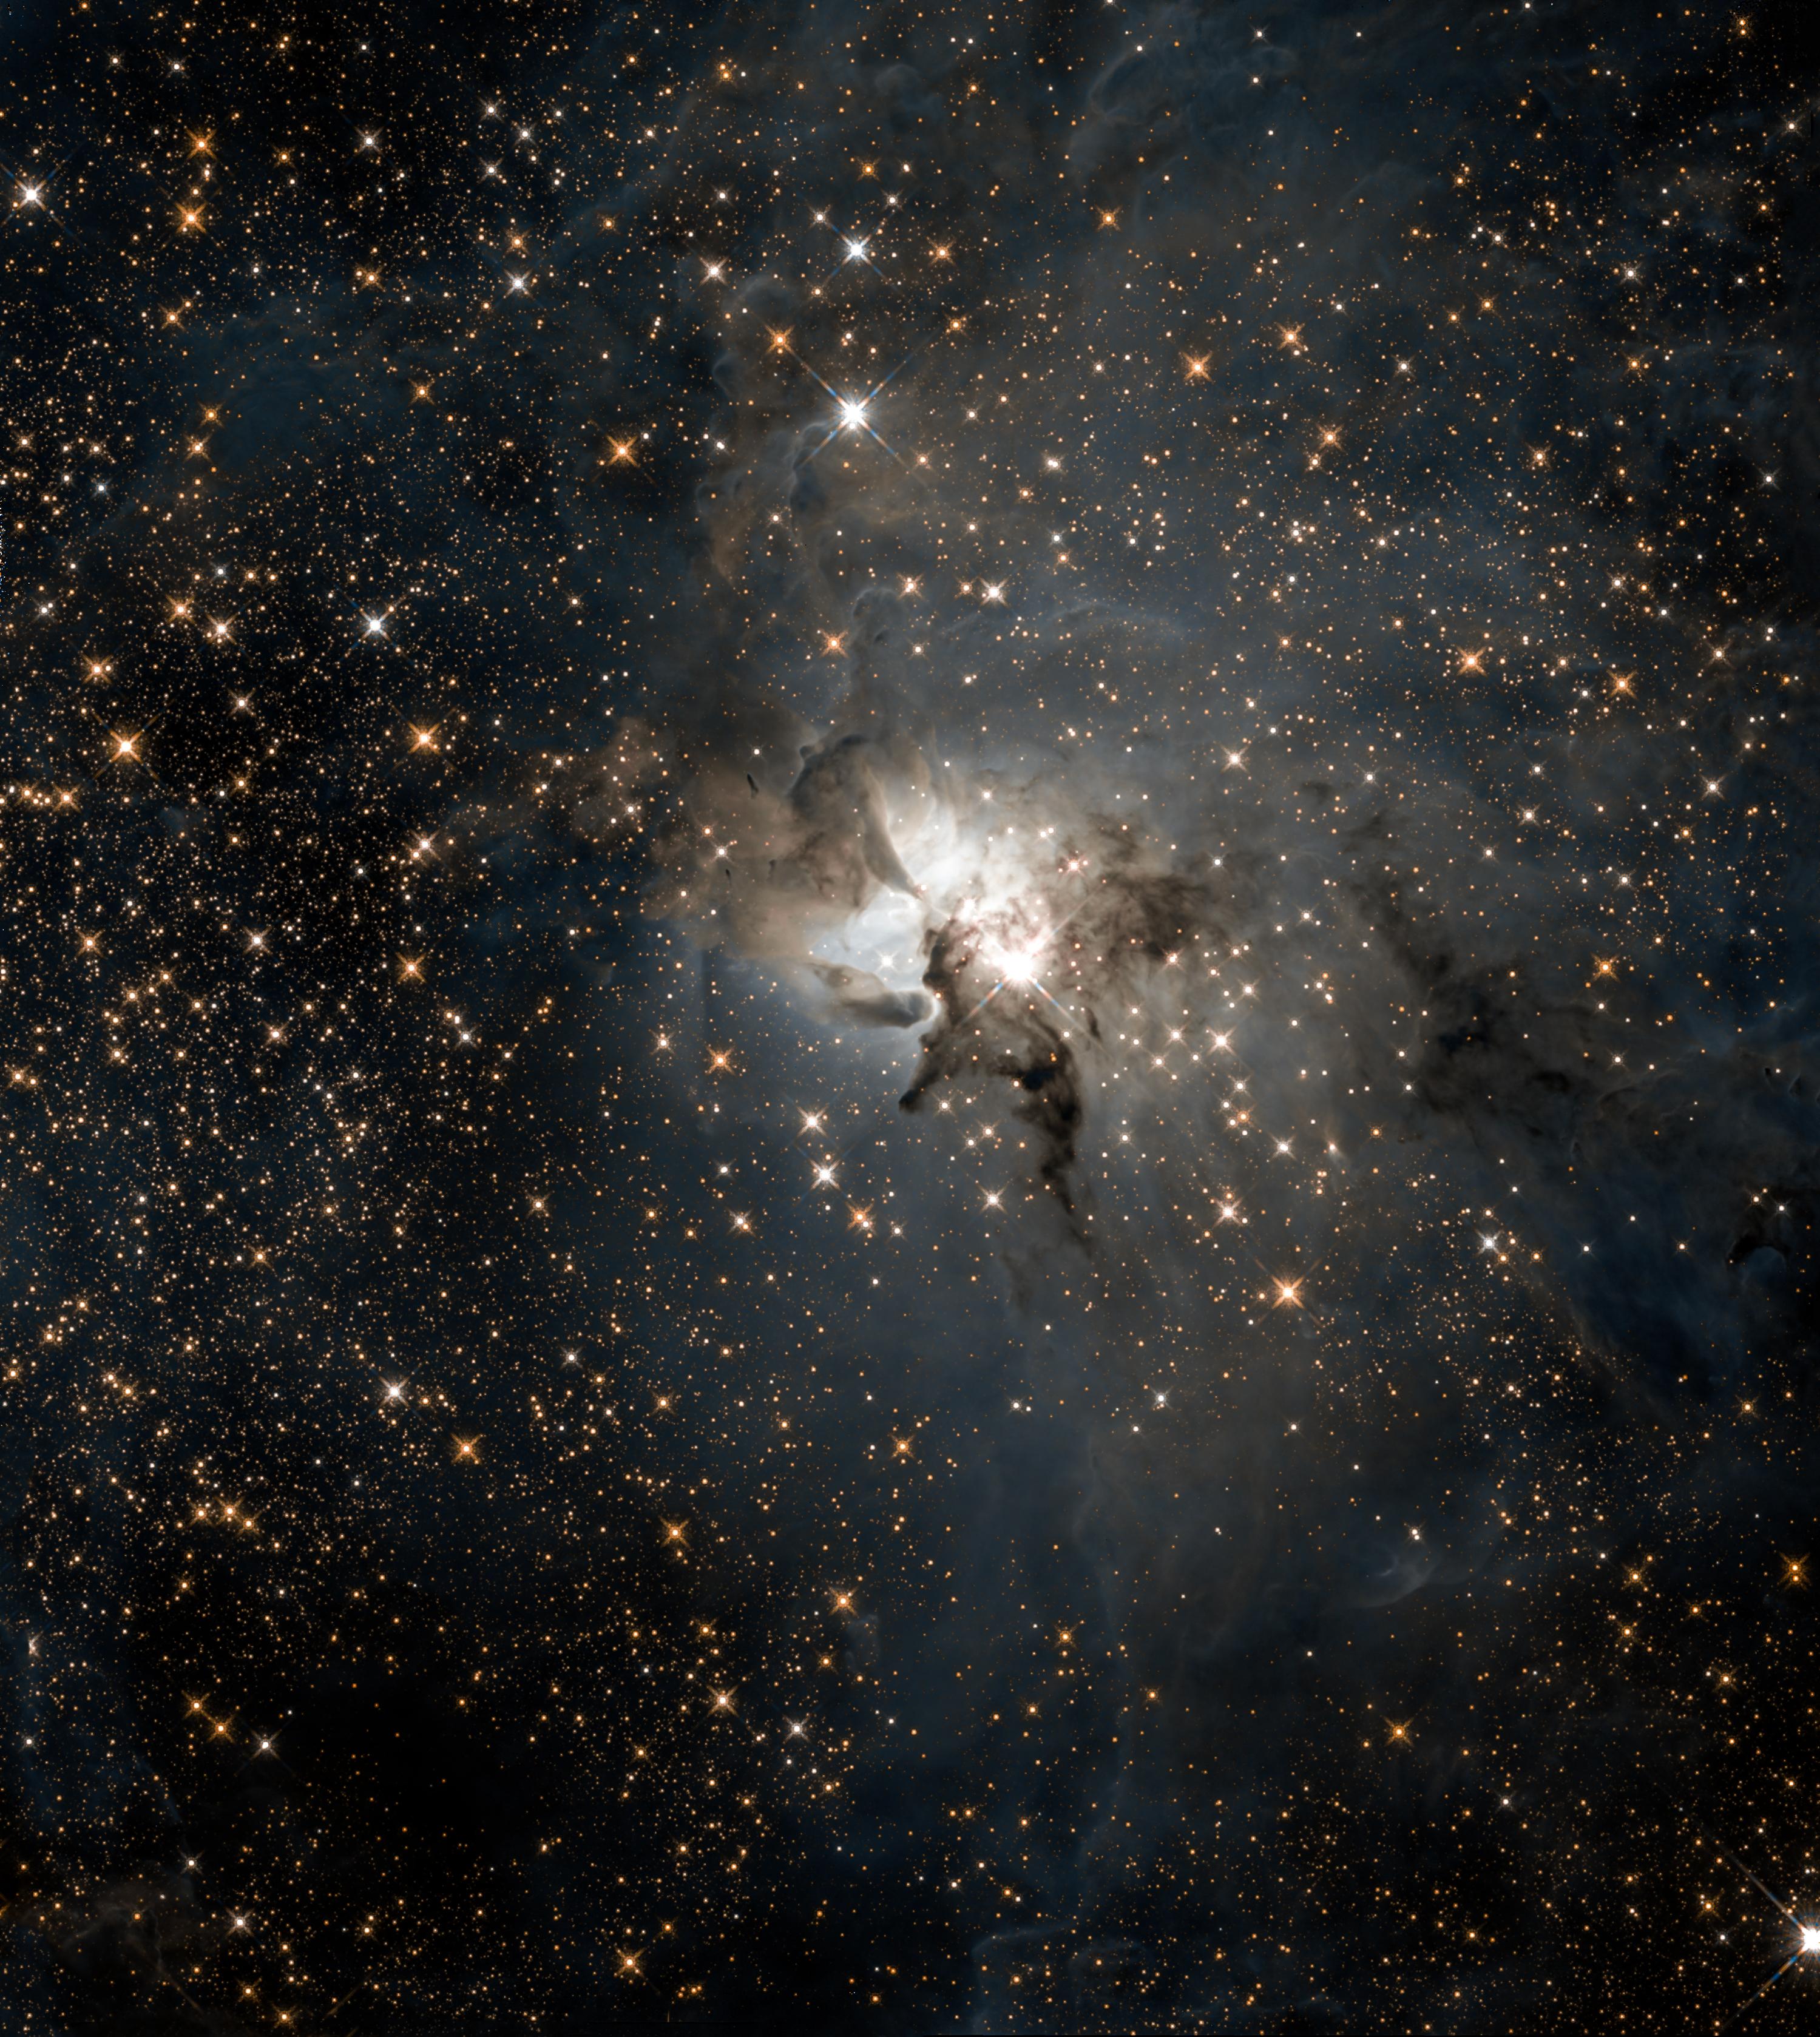 صورة للفضاء العميق بعرض 4 سنوات ضوئيّة تكشف عهن نجوم حديثة الولادة متبعثرة داخل منطقة التشكّل النجمي النشطة، قبالة حقلٍ مزدحم من النجوم الخلفية. يظهر نجم ساطع بالقرب من مركز الصورة.